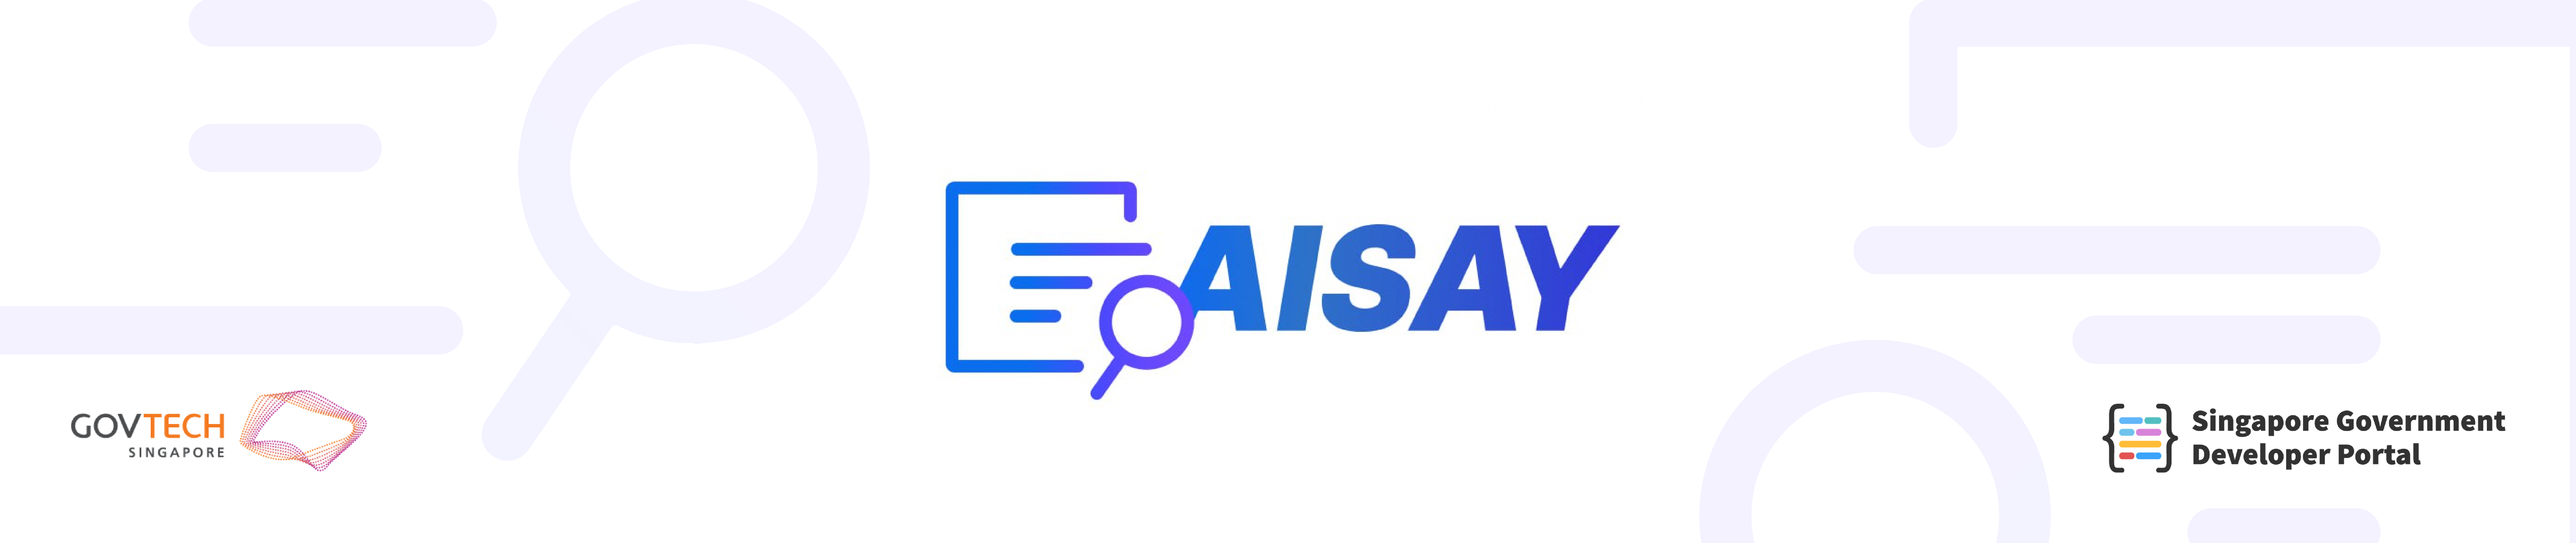 AISAY header banner